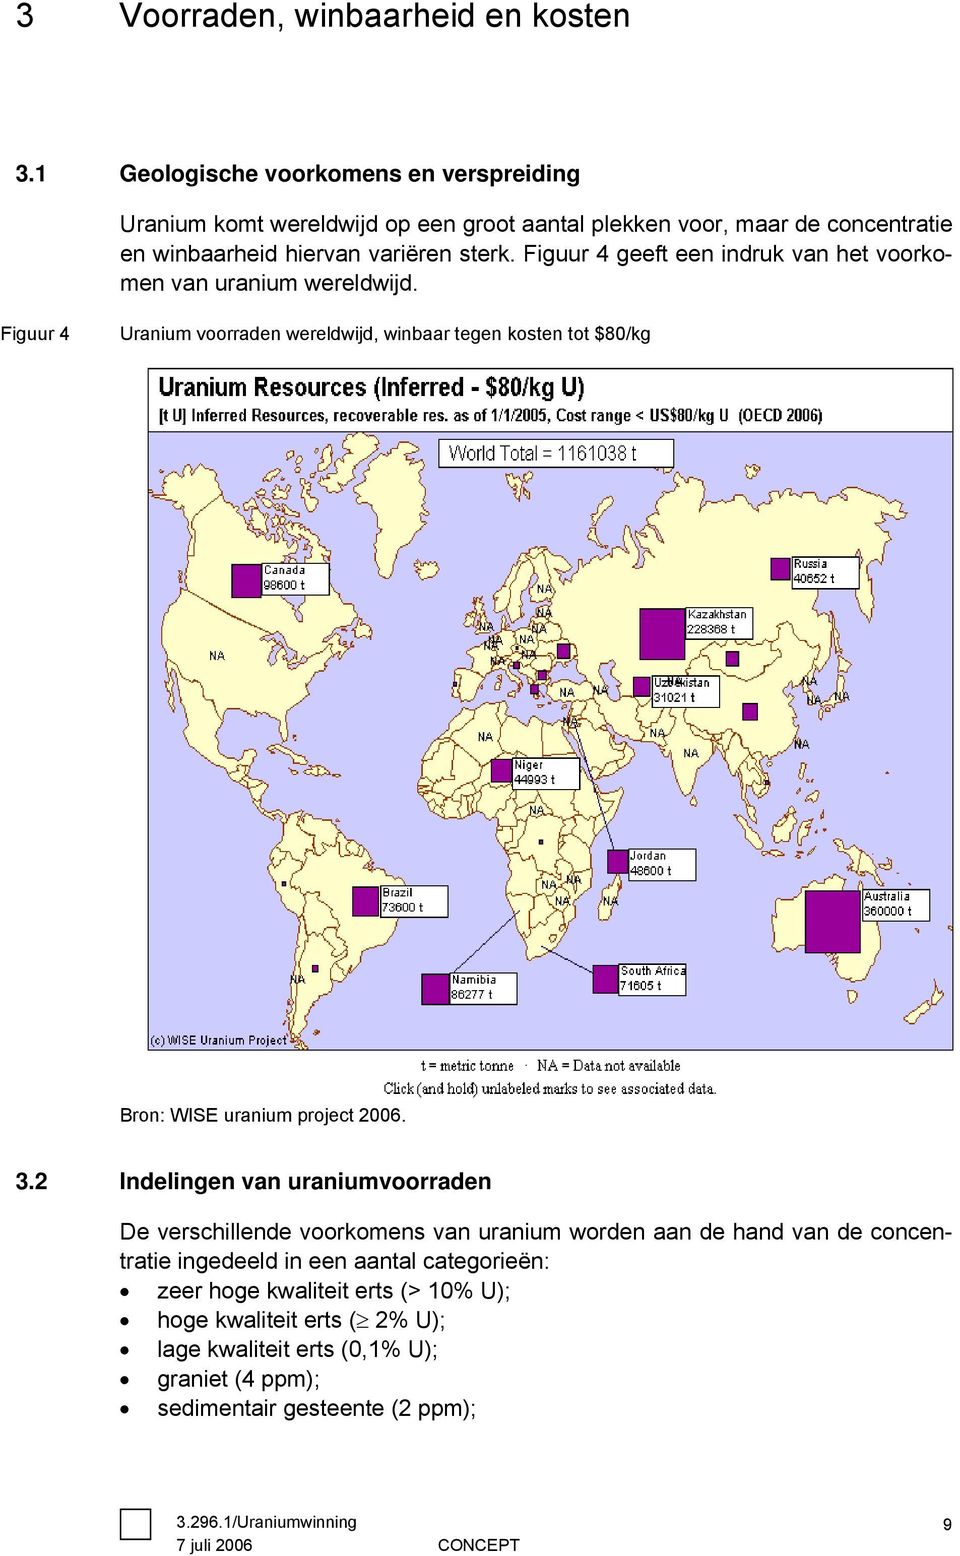 Figuur 4 geeft een indruk van het voorkomen van uranium wereldwijd. Figuur 4 Uranium voorraden wereldwijd, winbaar tegen kosten tot $80/kg Bron: WISE uranium project 2006.